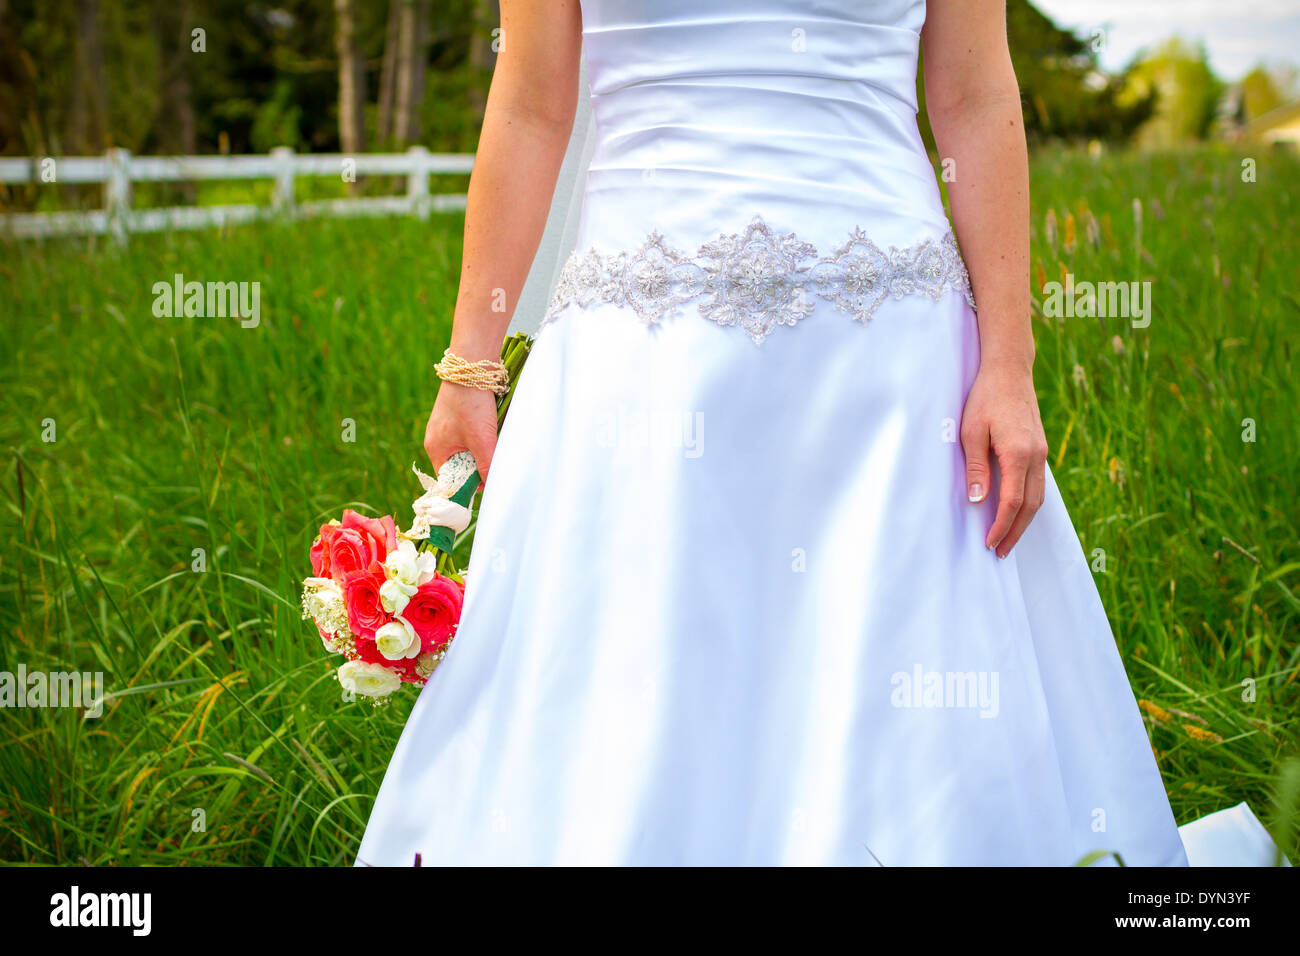 Promise dans son robe de mariée blanche tenant un beau bouquet de fleurs roses notamment. Banque D'Images